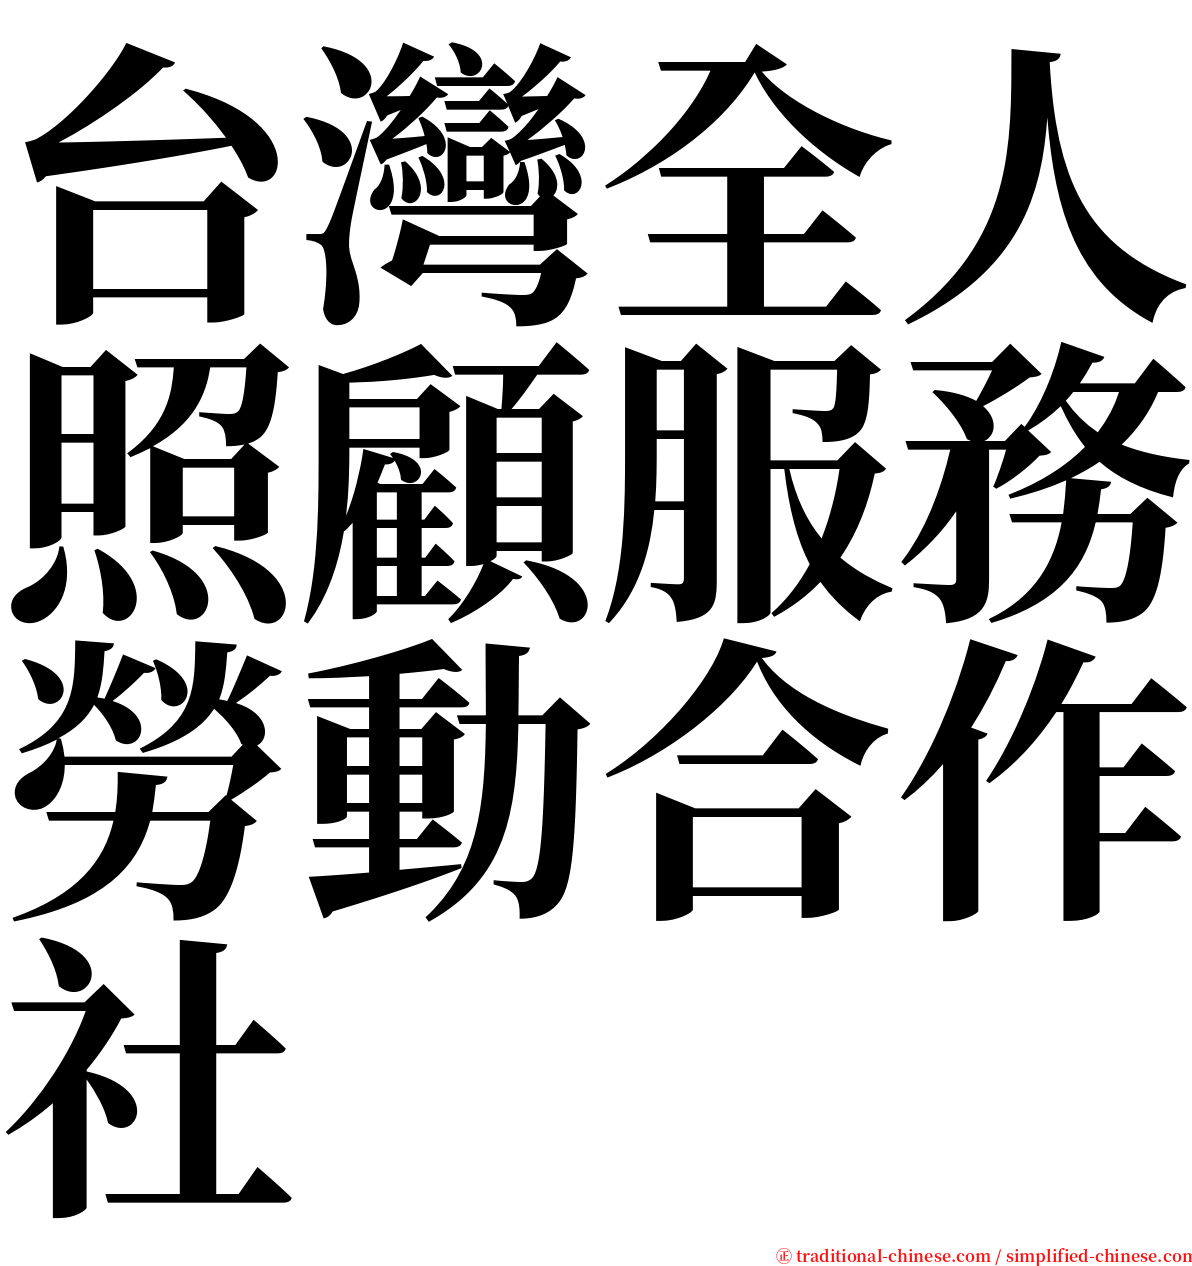 台灣全人照顧服務勞動合作社 serif font